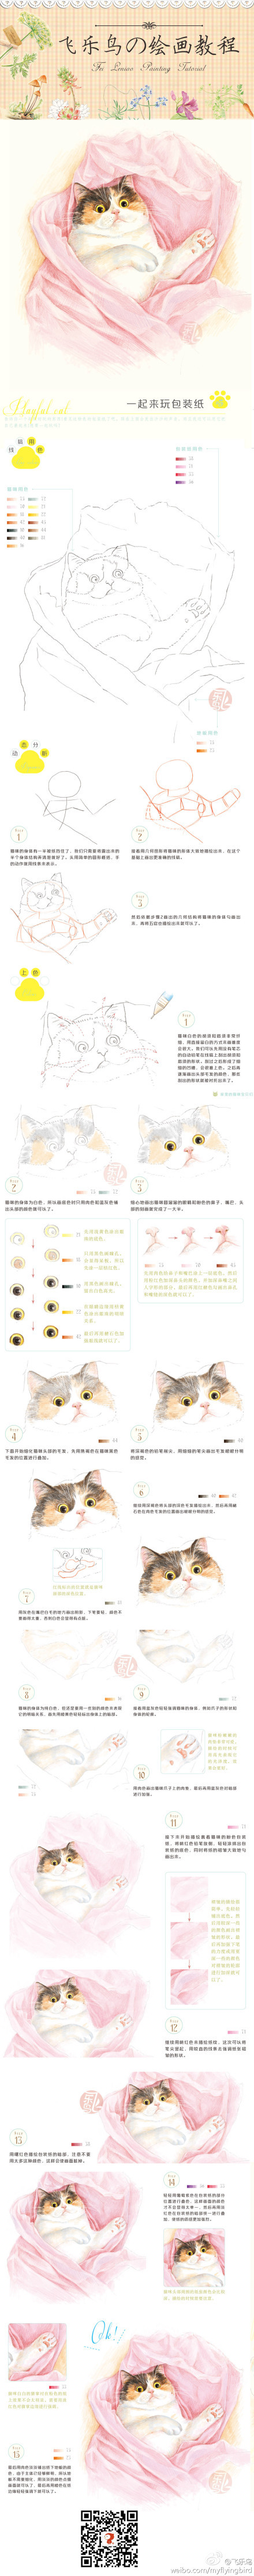 飞乐鸟绘画 基础教程 每天十分钟彩铅笔 玩包装纸的猫 喵星人